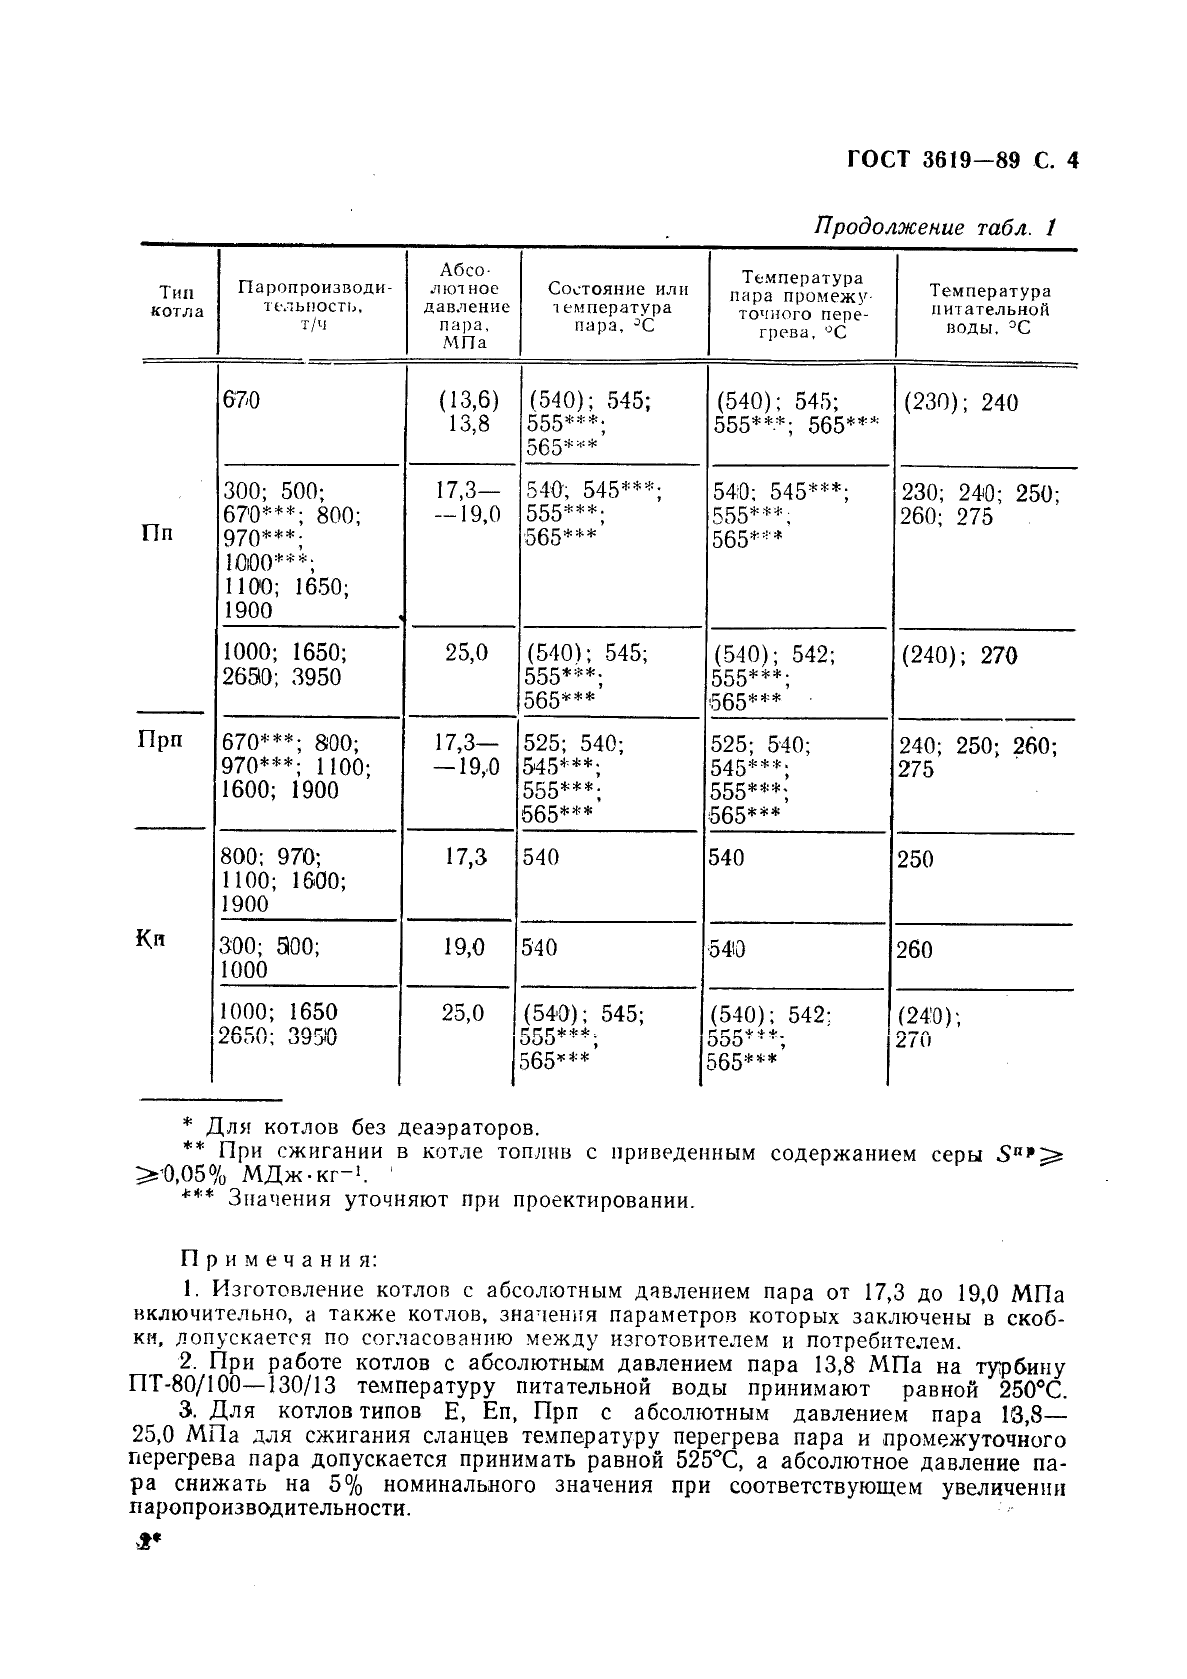 ГОСТ 3619-89 Котлы паровые стационарные. Типы и основные параметры (фото 5 из 12)